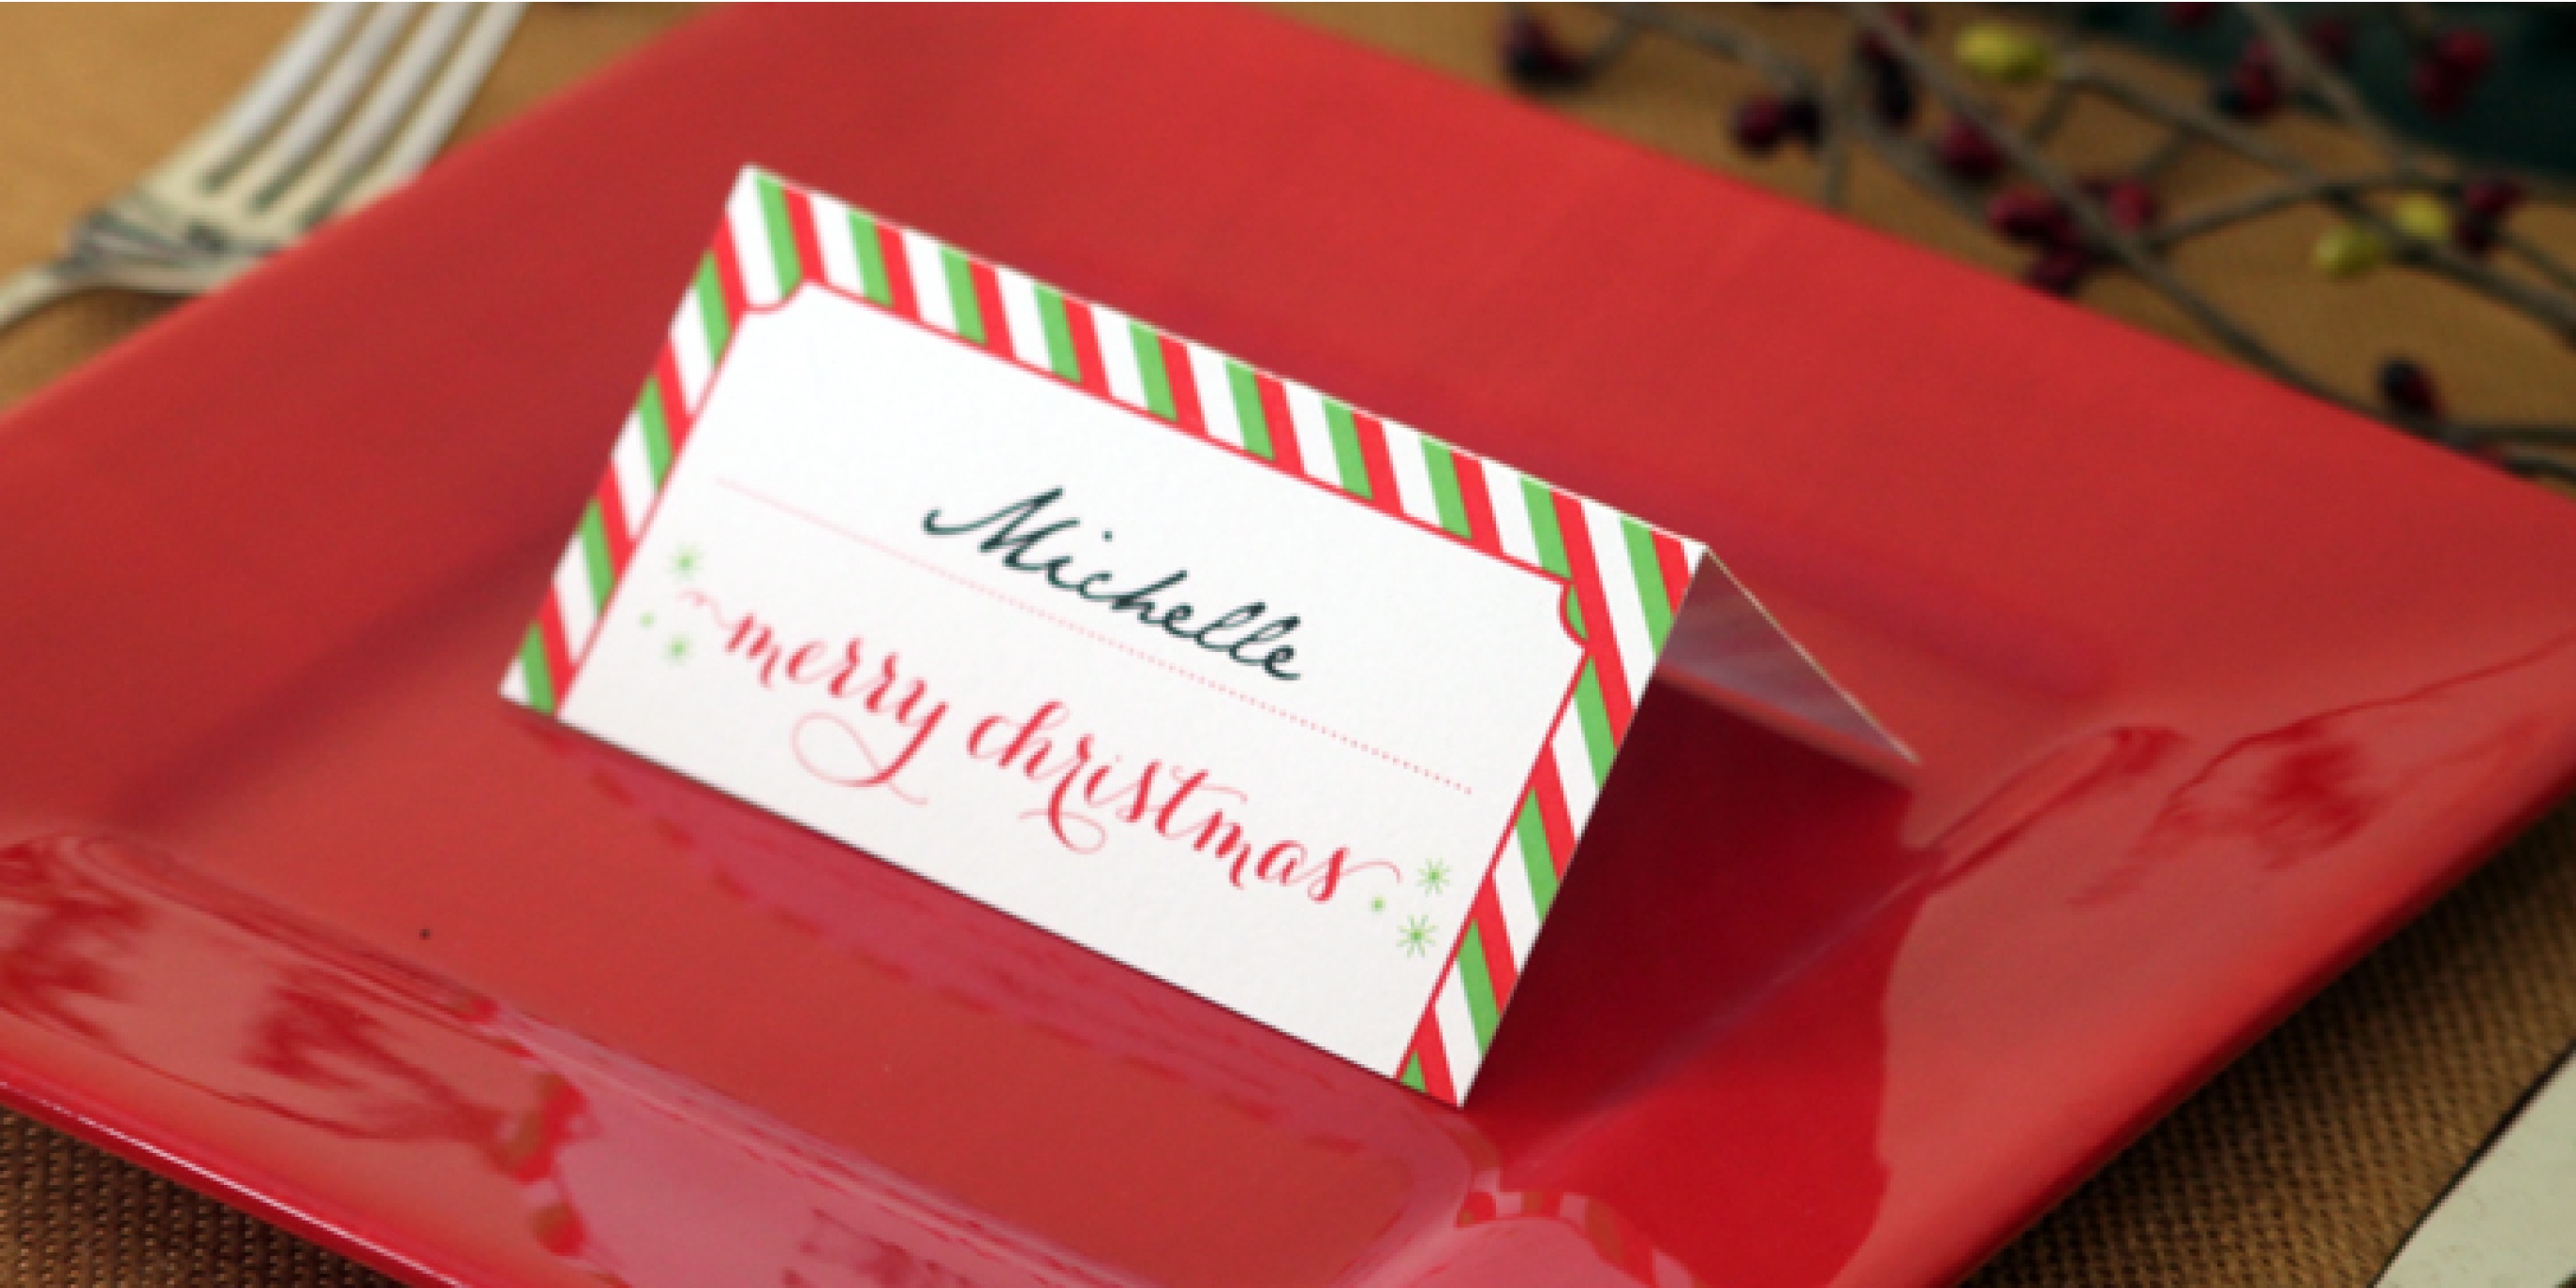  Christmas Table Name Cards Free Printable Free Printable